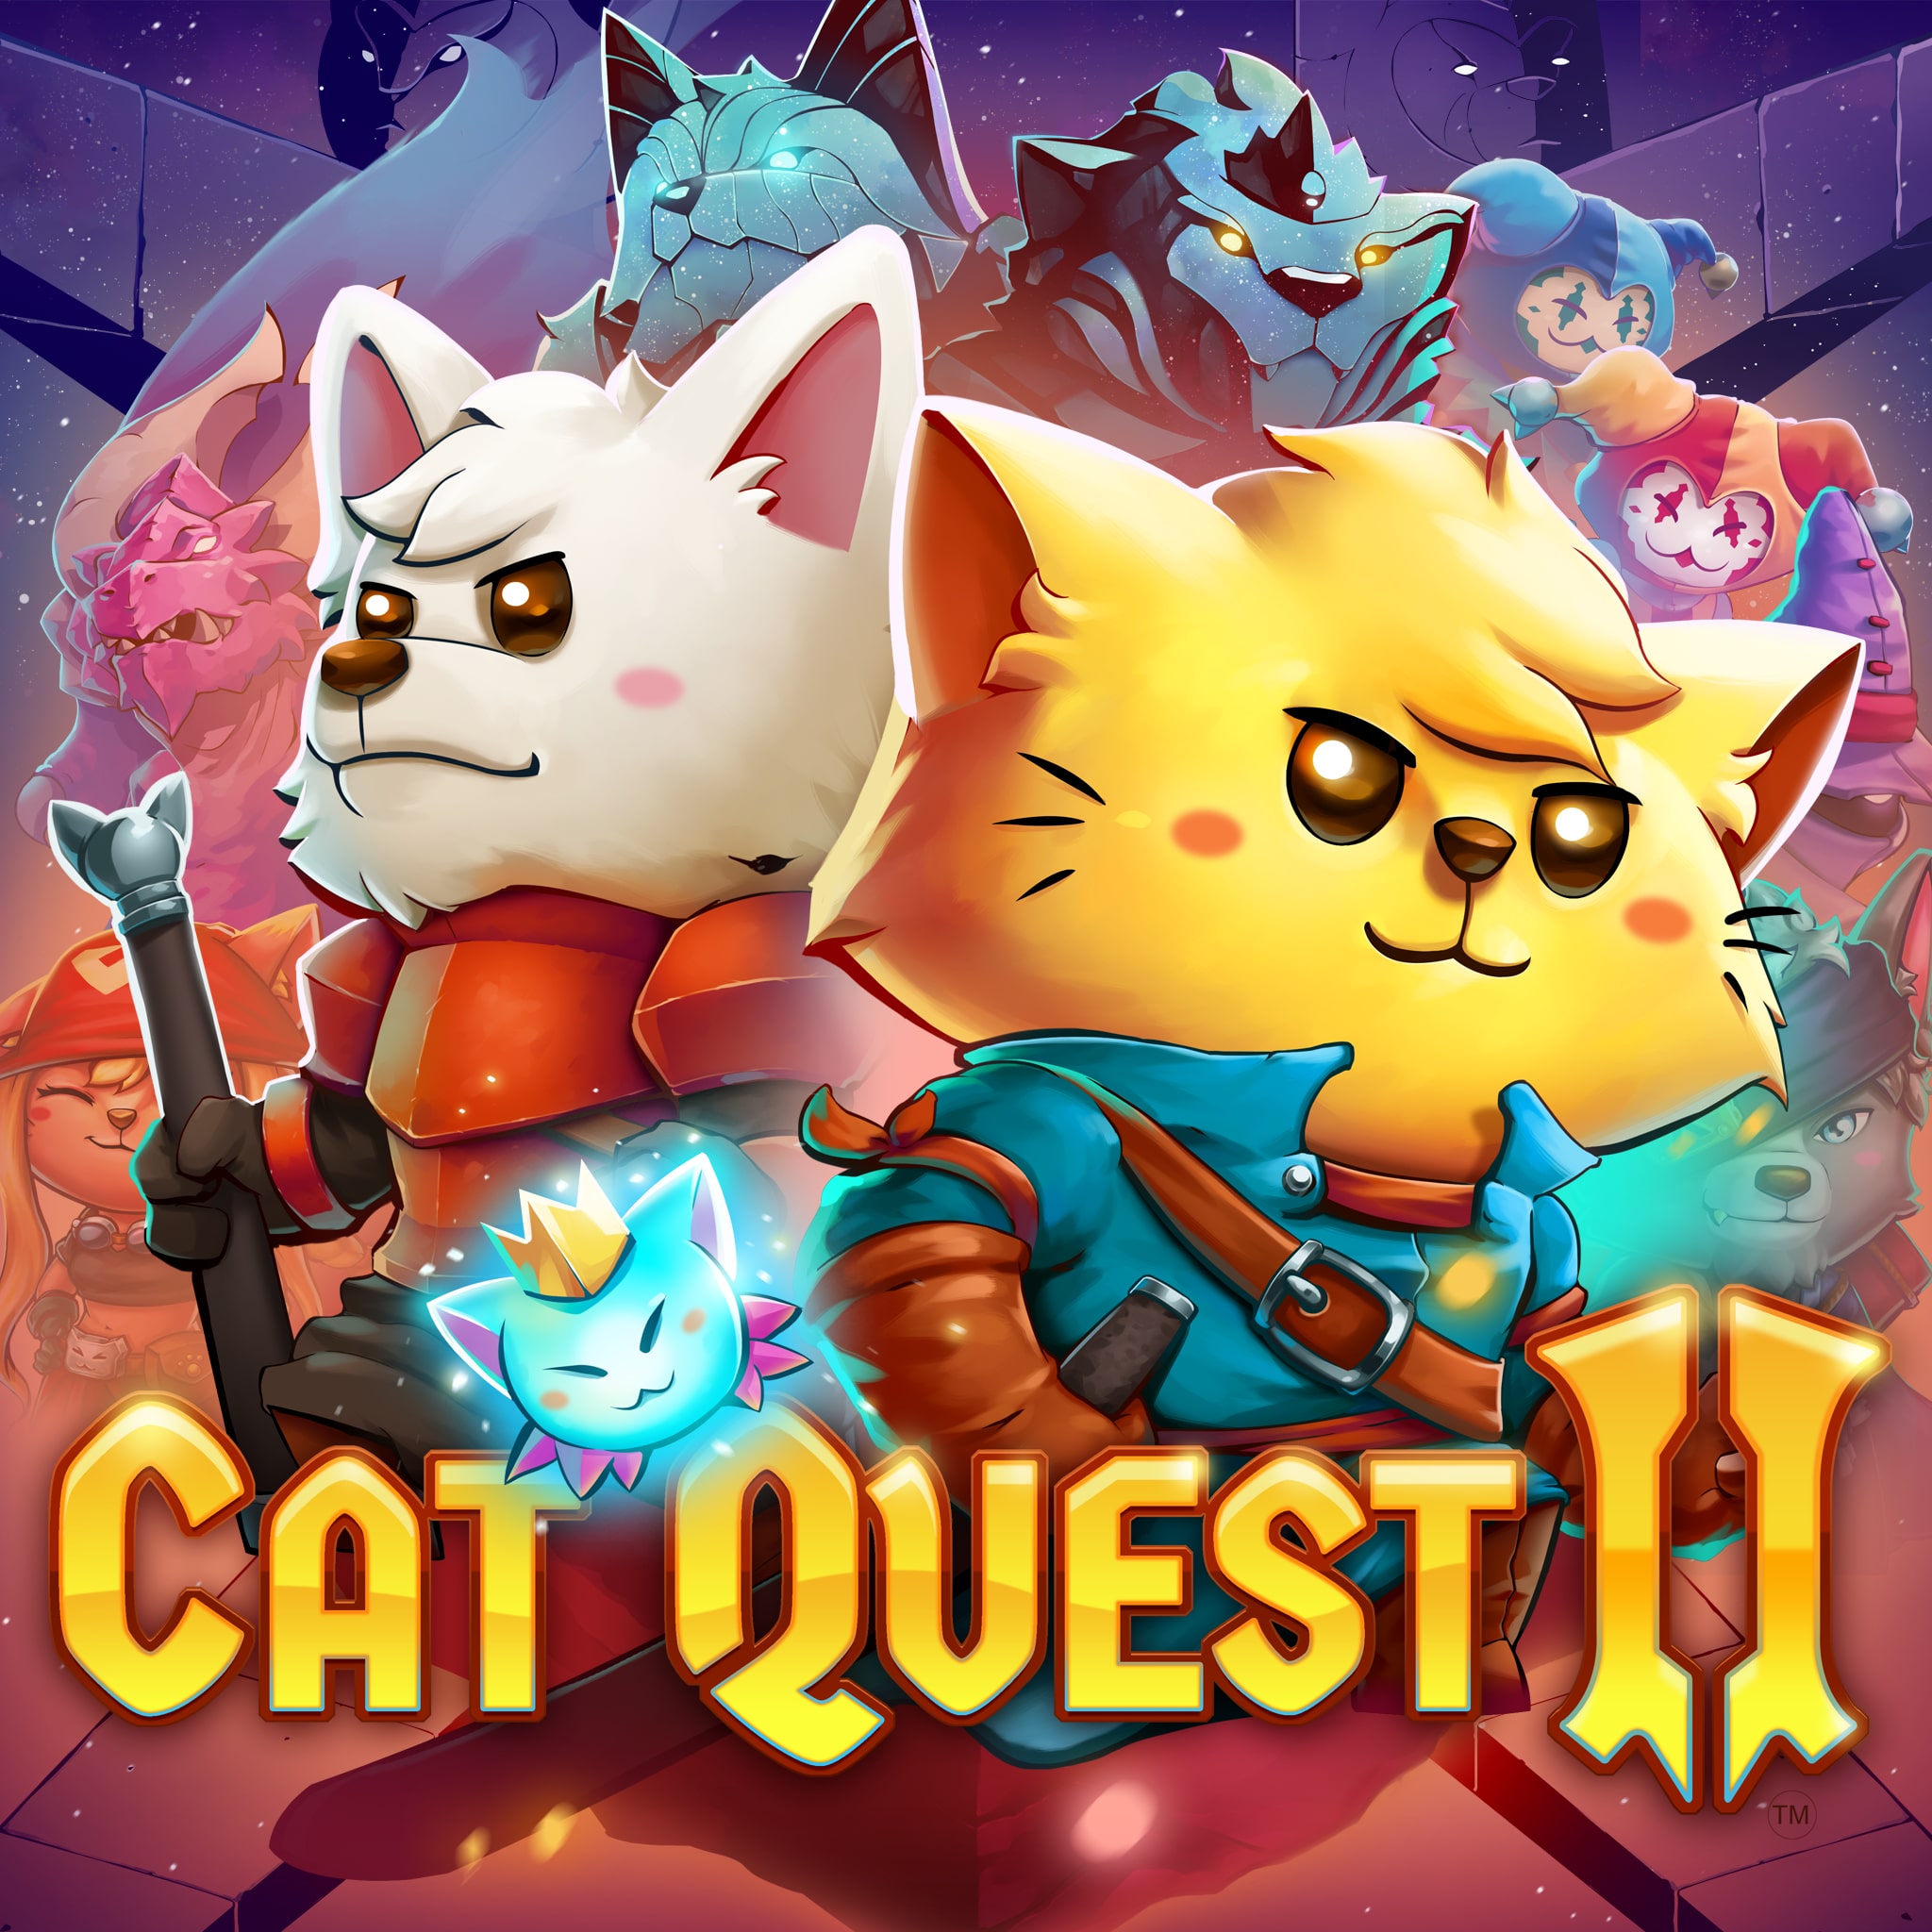 Capa do jogo Cat Quest II, com o gato e o cachorro se preparando para a batalha.